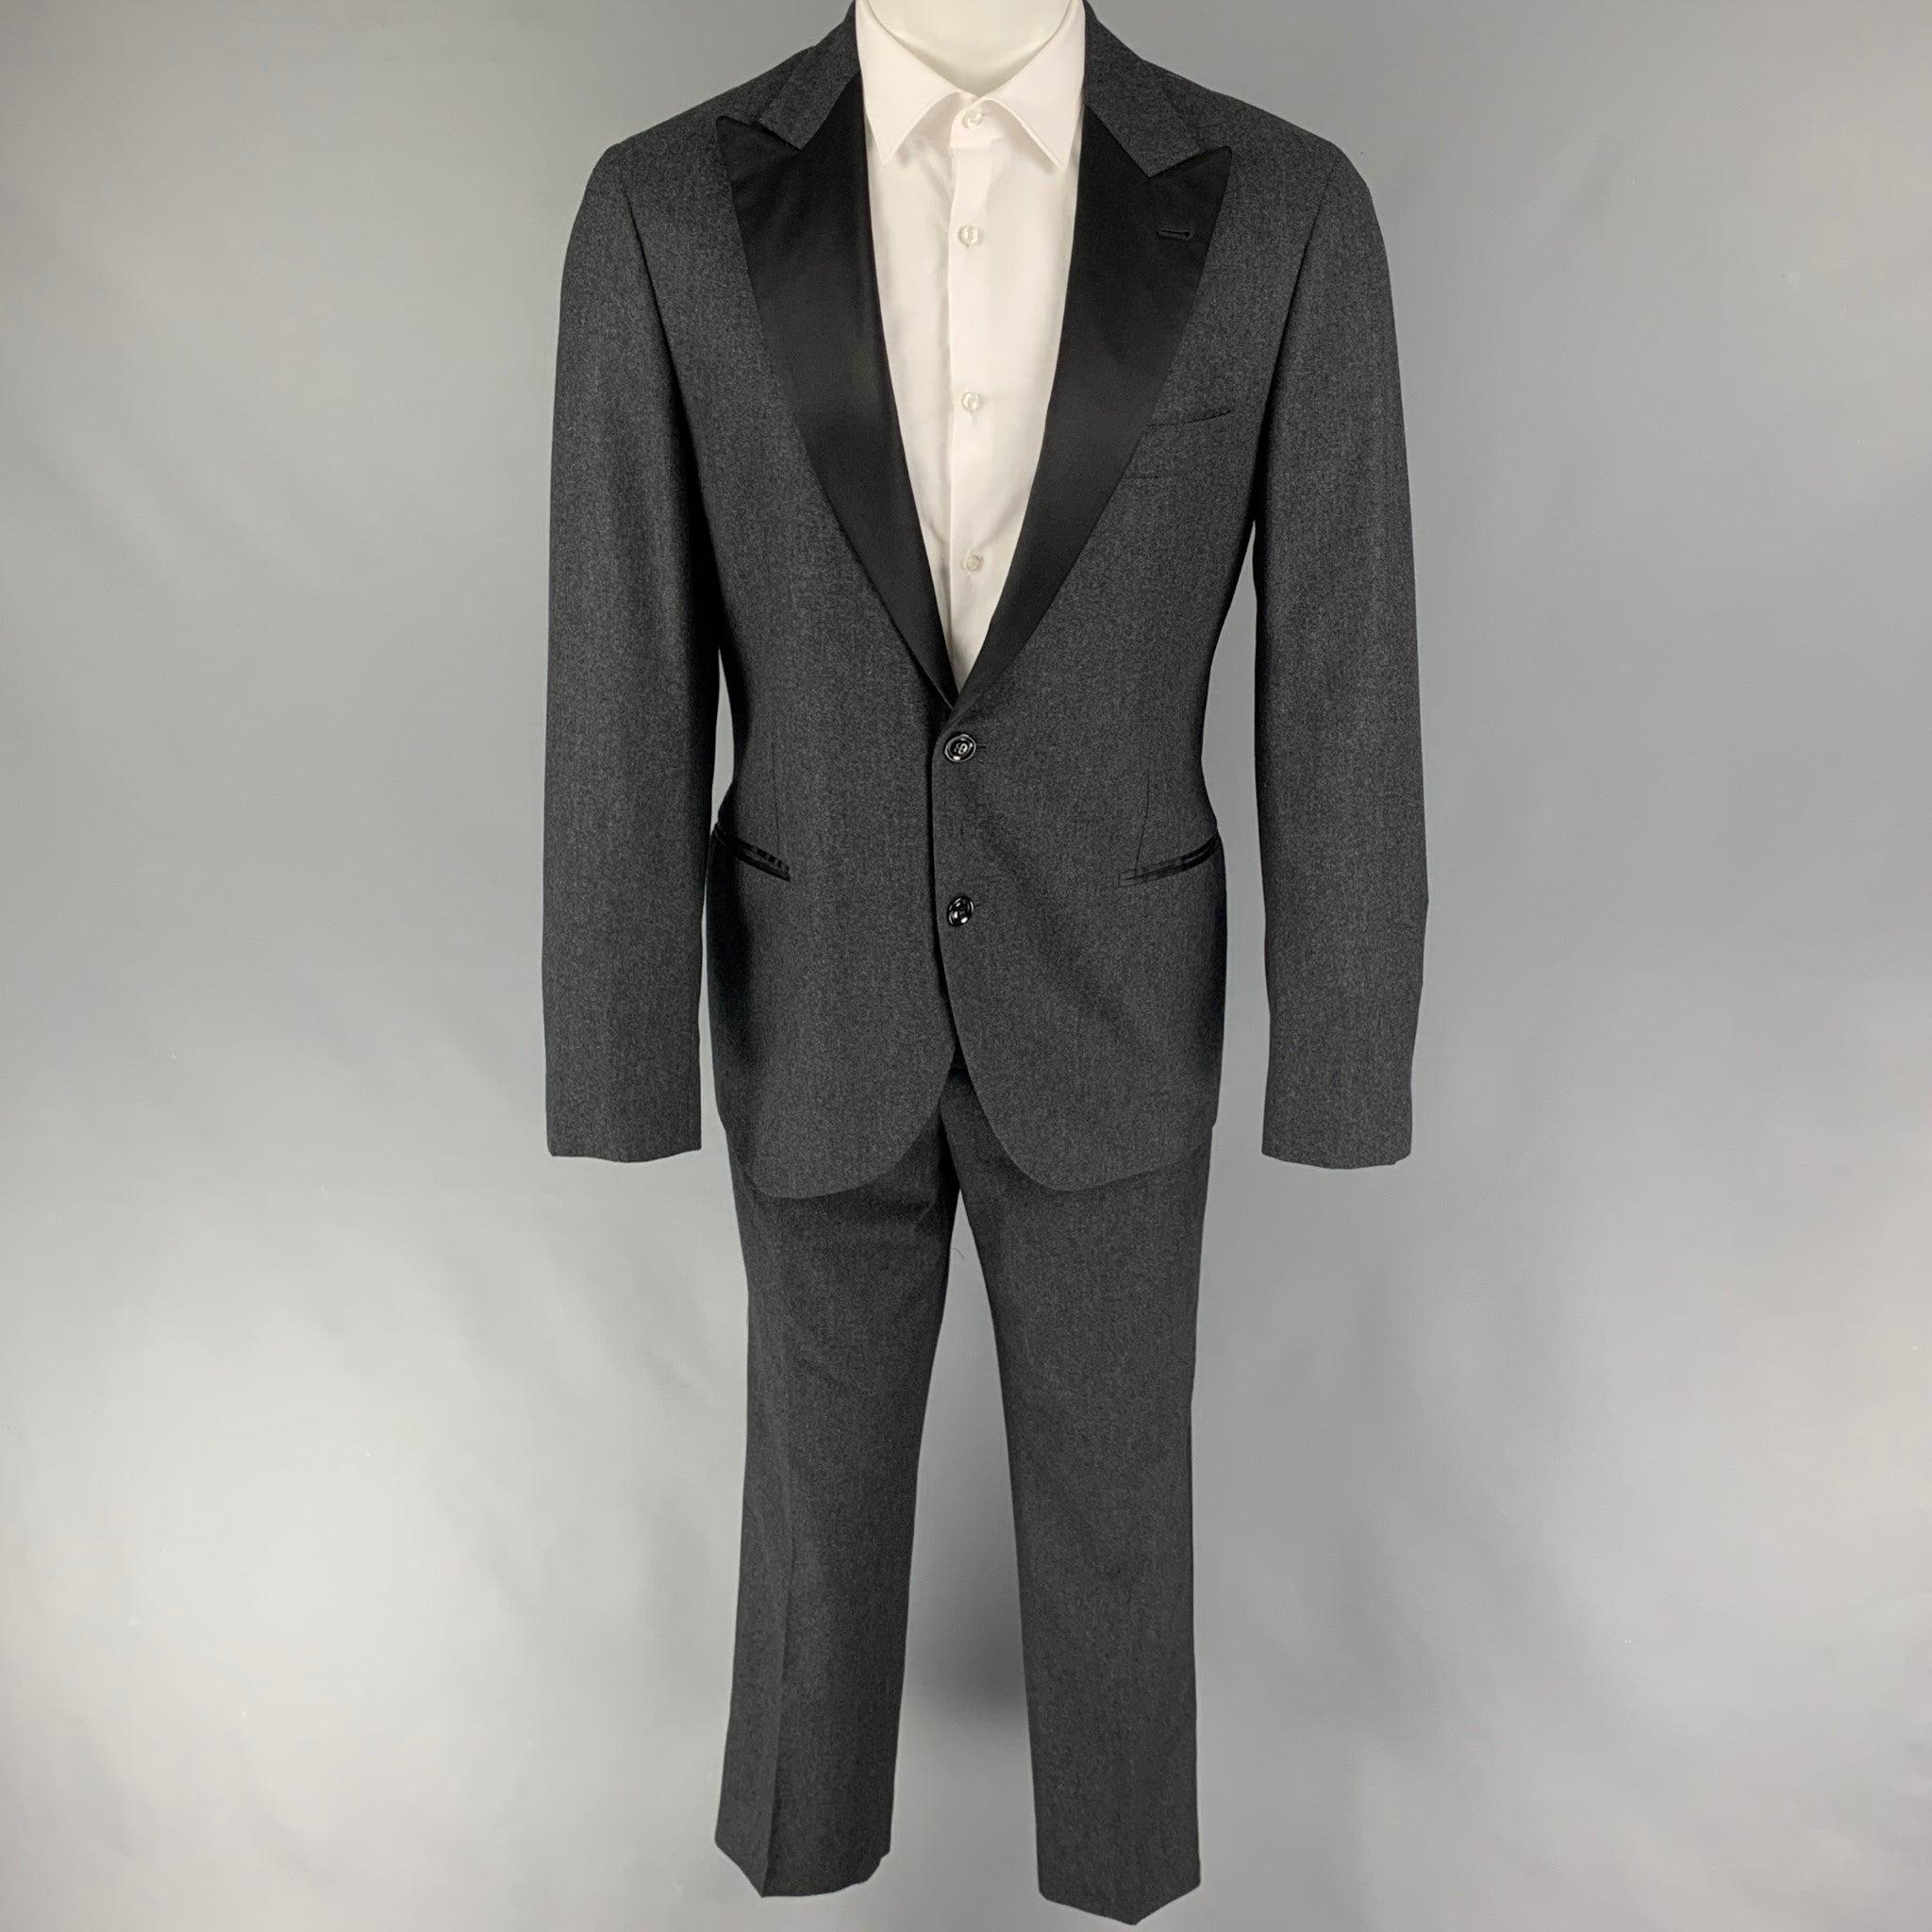 BRUNELLO CUCINELLI
Le costume de smoking est en laine mélangée grise et noire avec une doublure complète et comprend un manteau de sport à un seul boutonnage avec un revers en pointe et un pantalon assorti à devant plat. Comprend un sac à vêtements.